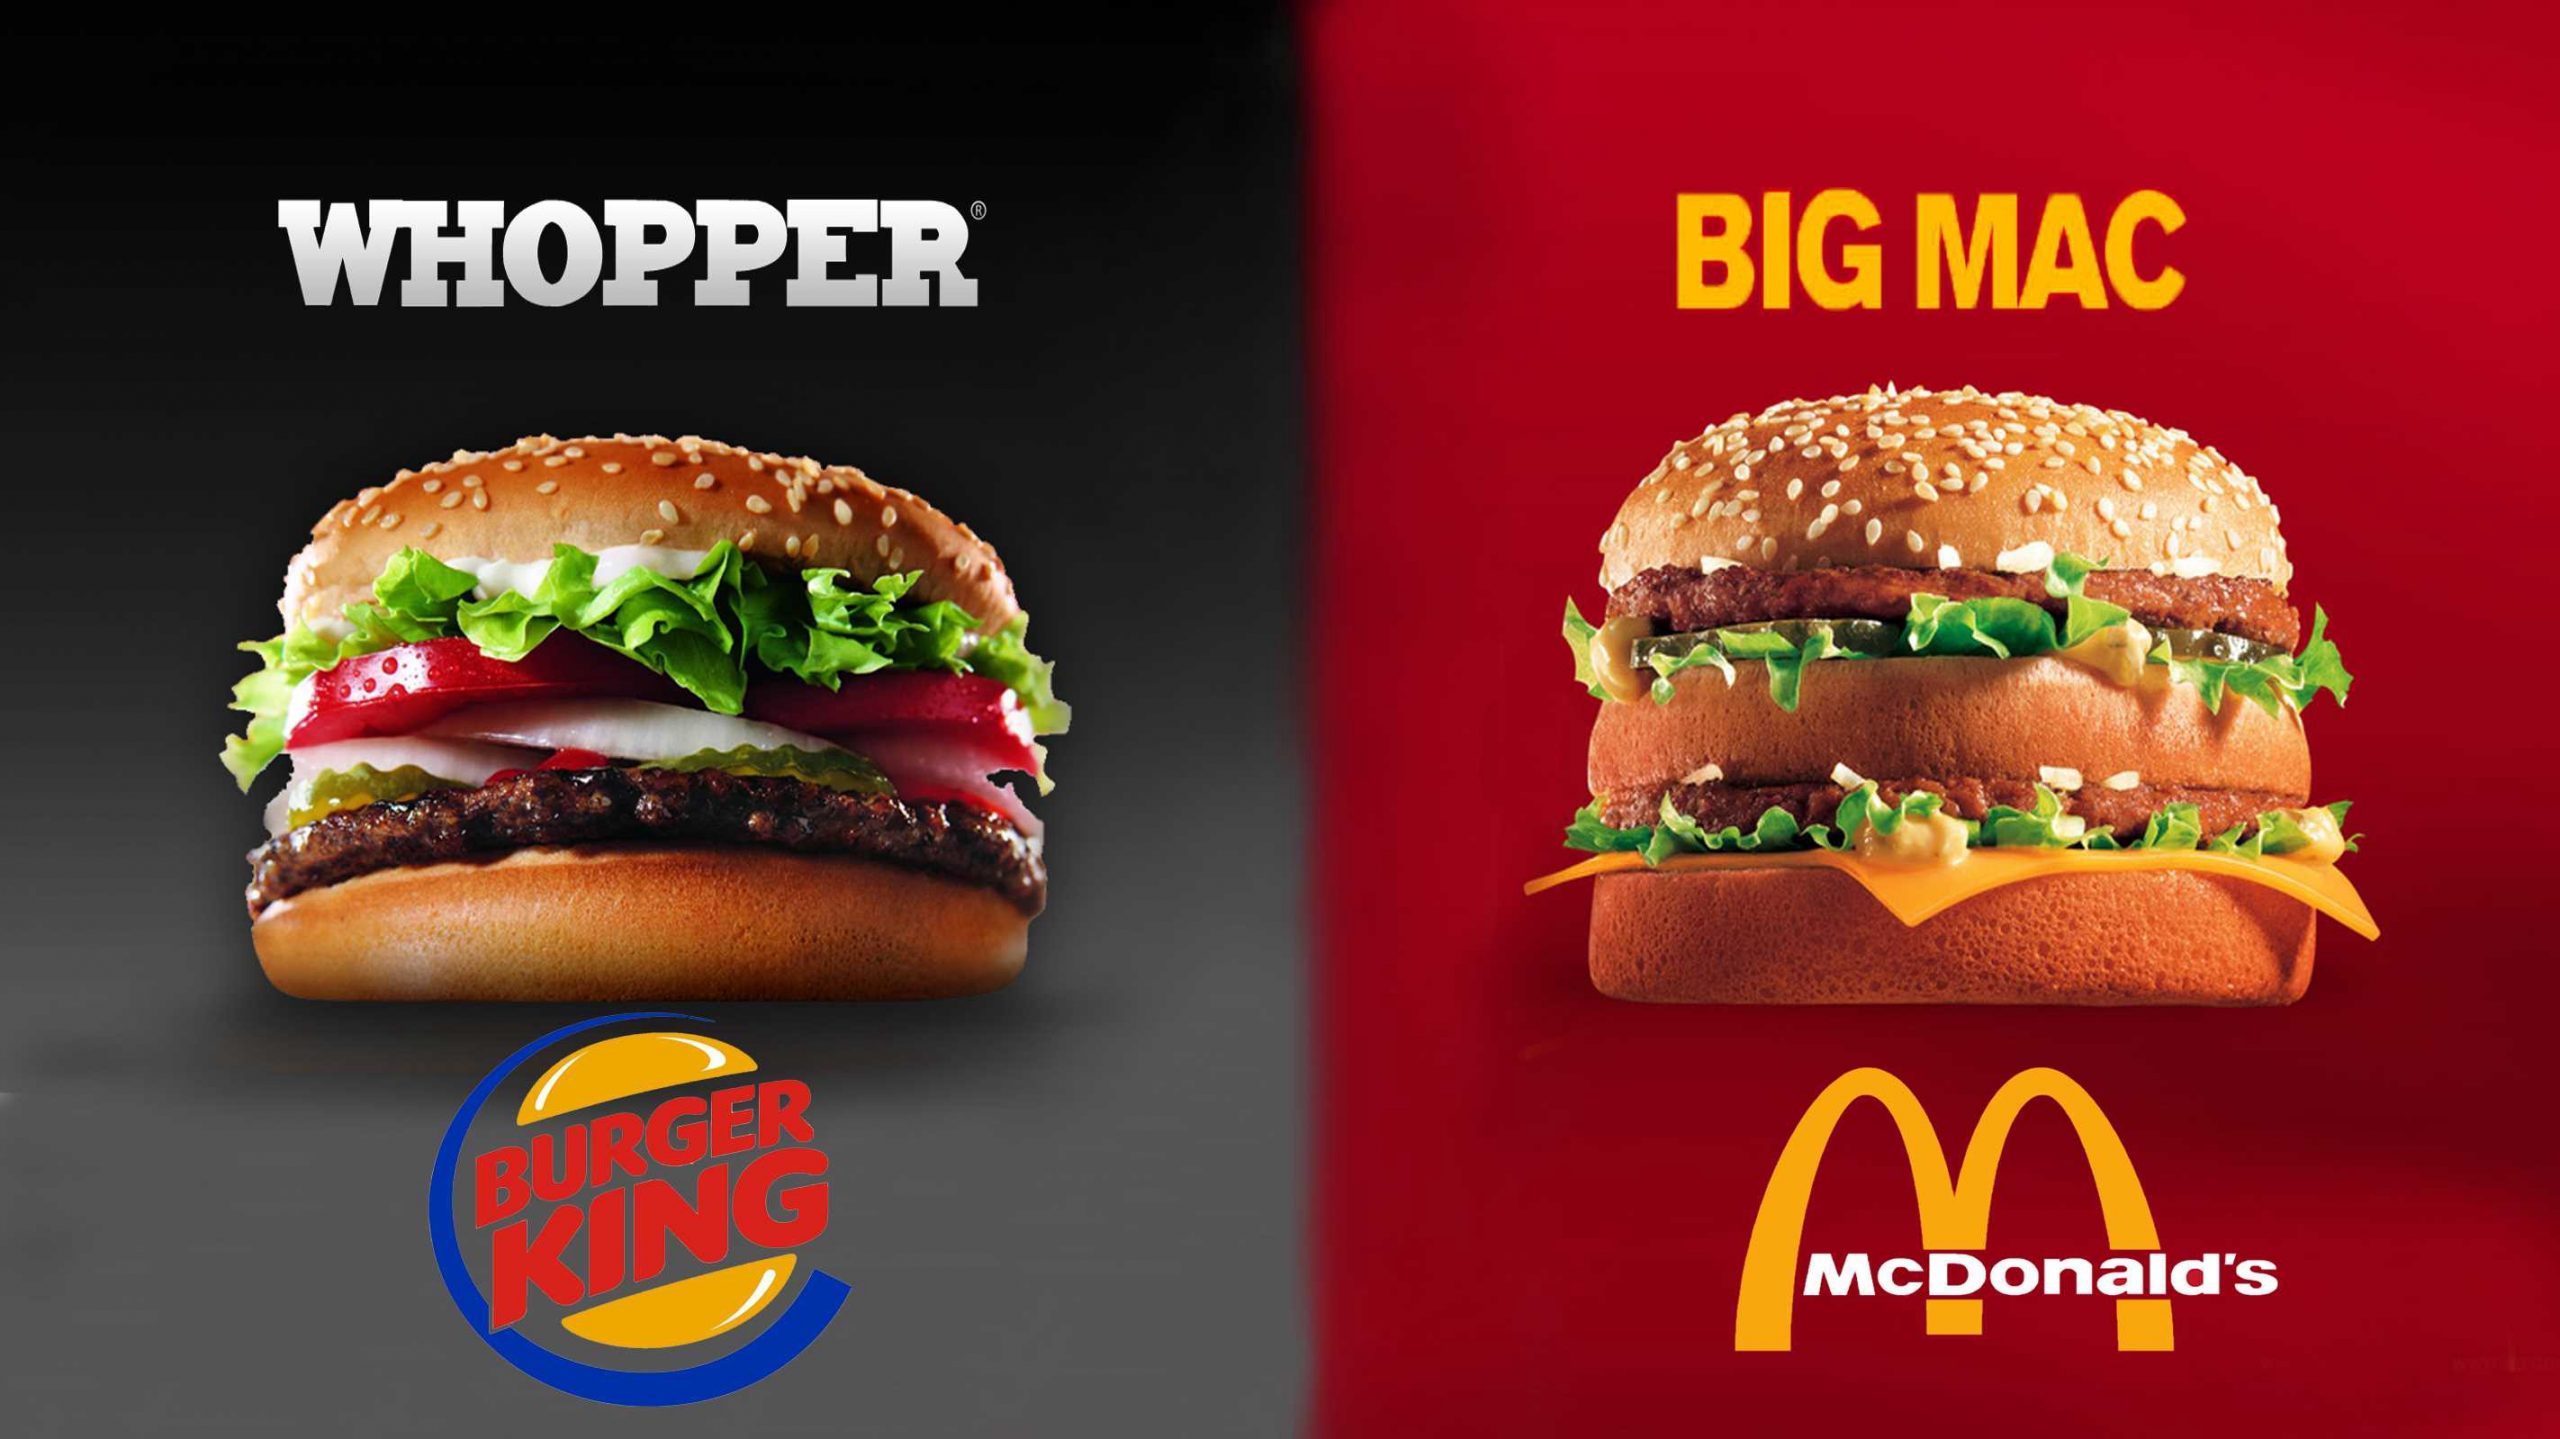 جنگ تبلیغاتی مک دونالدز و برگر کینگ | جنگ همبرگرها